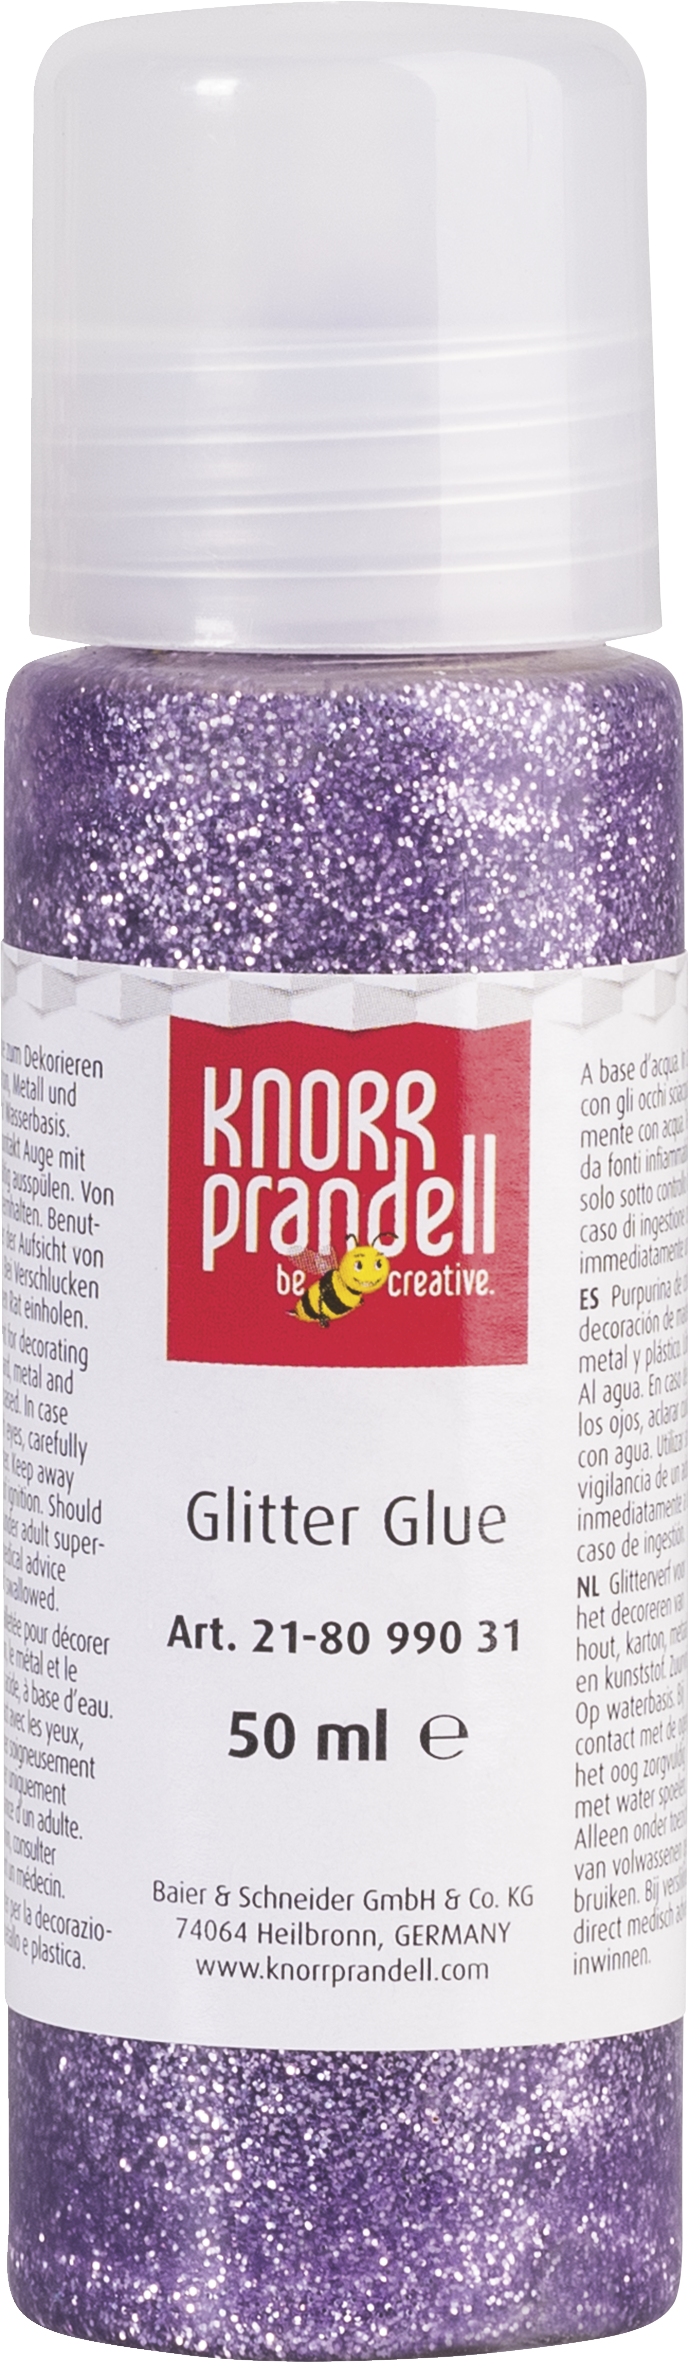 Glitter Glue : Knorr Prandell : 50 ml : 031 Lila